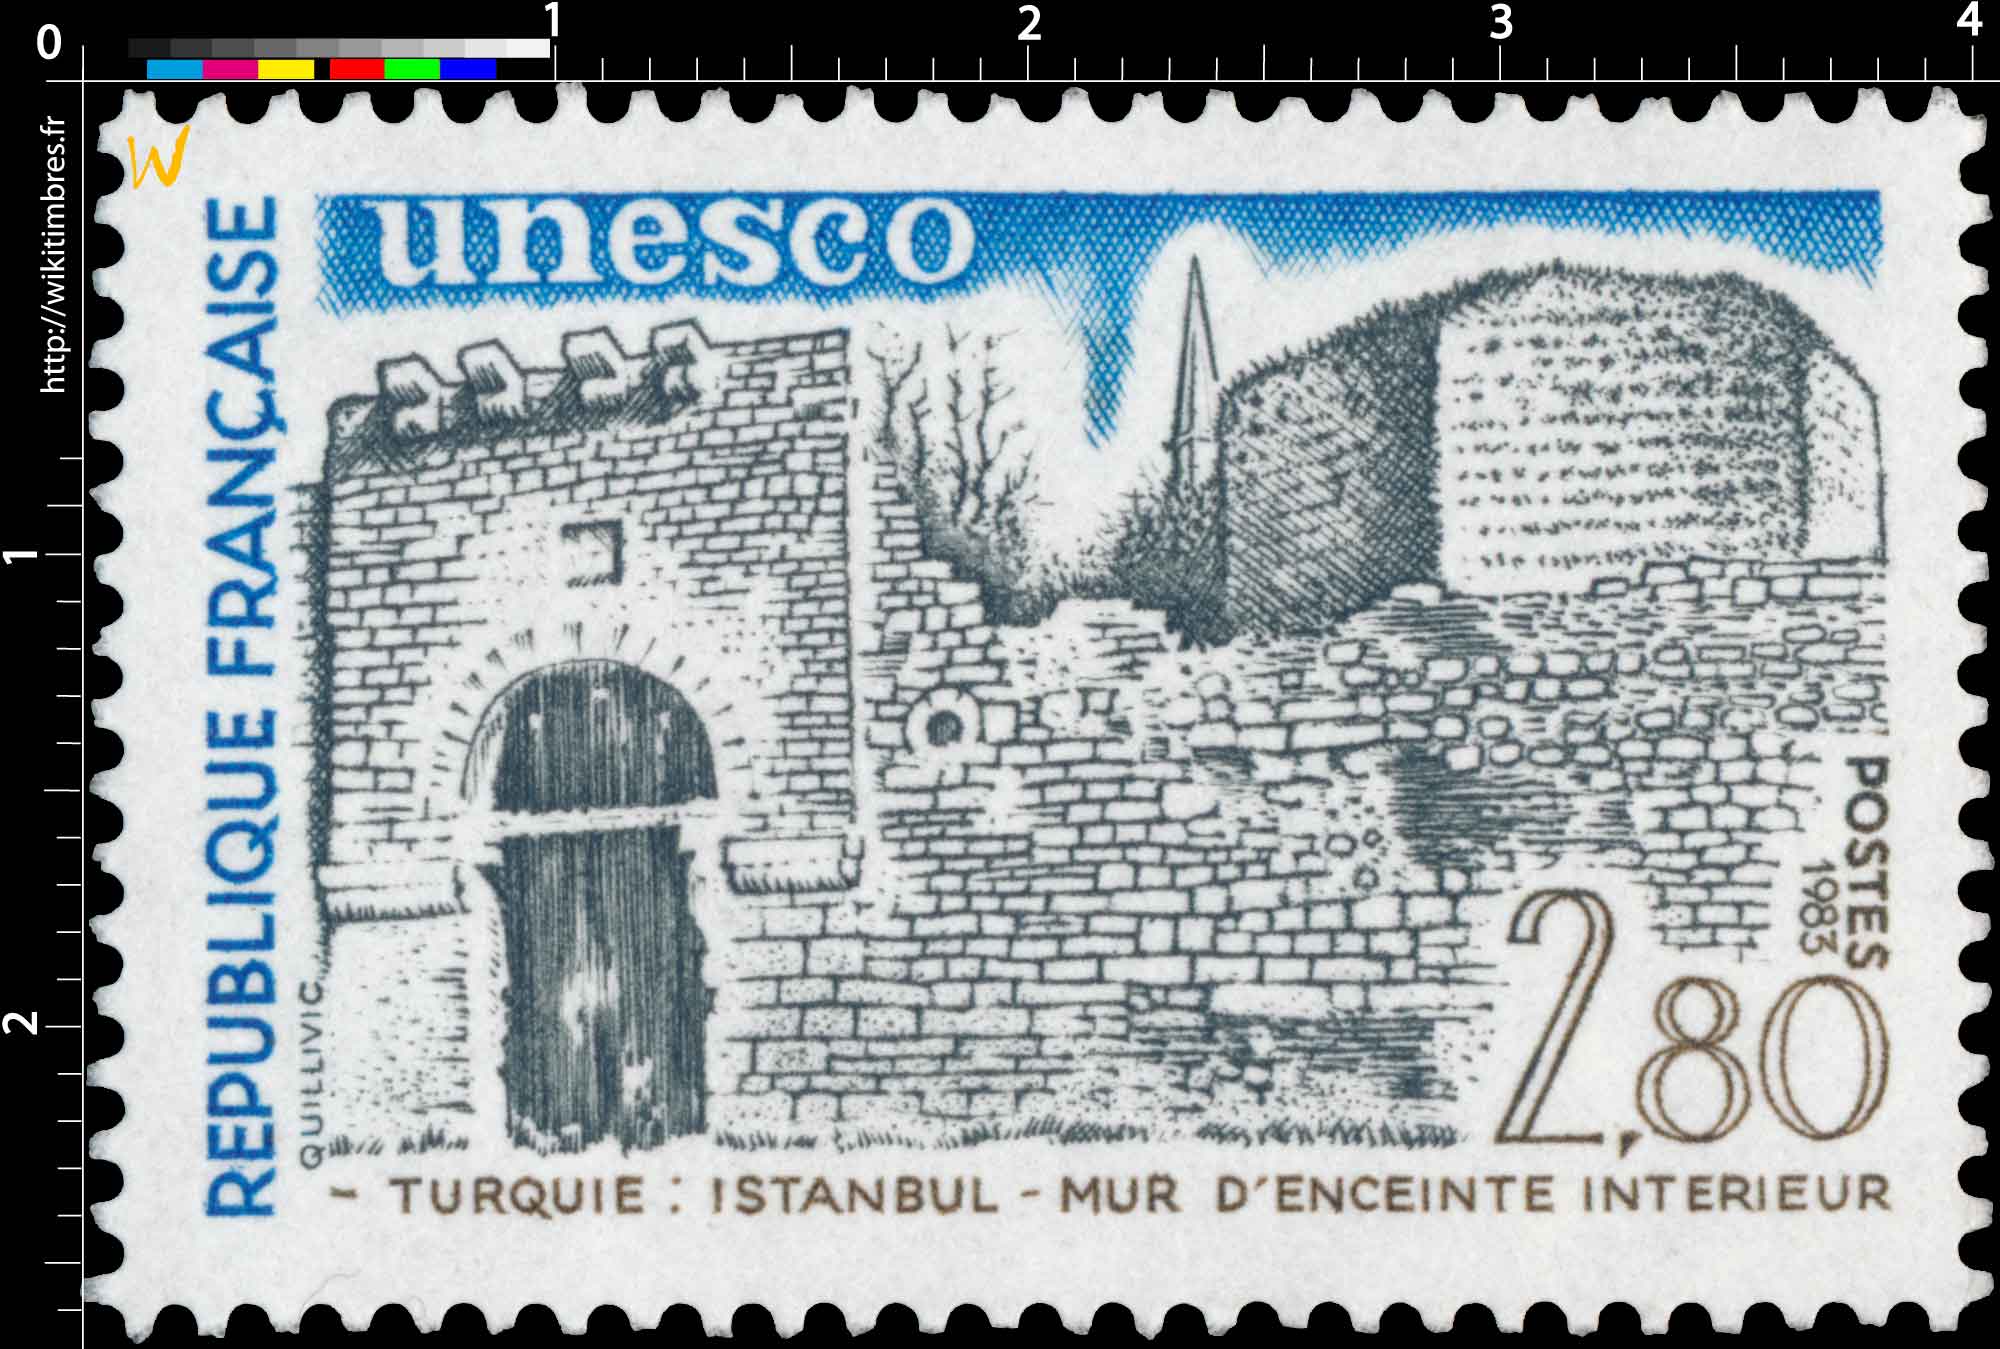 1983 Unesco TURQUIE : ISTANBUL - MUR D'ENCEINTE INTÉRIEUR